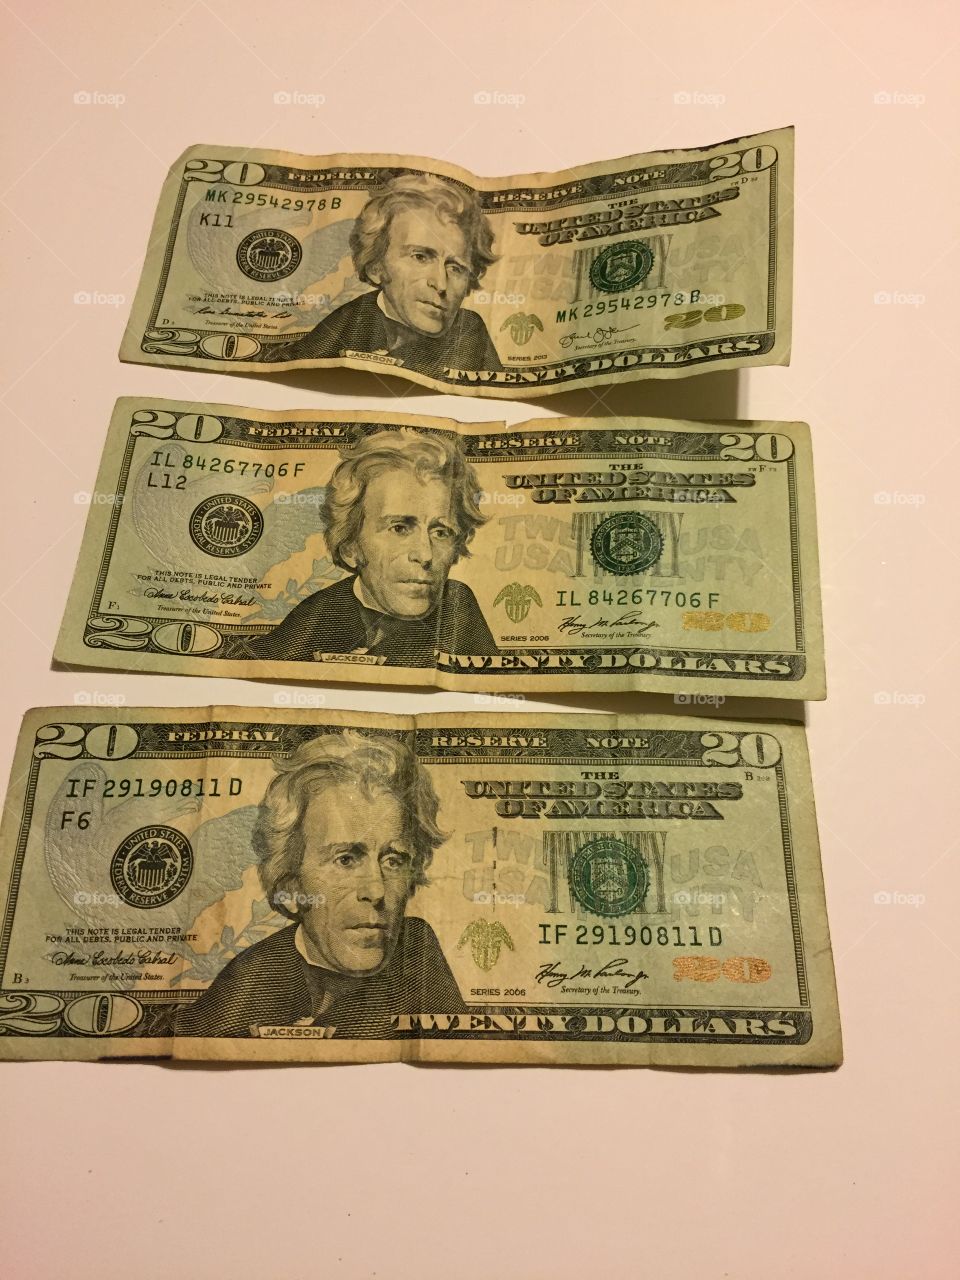 Three $20 bills